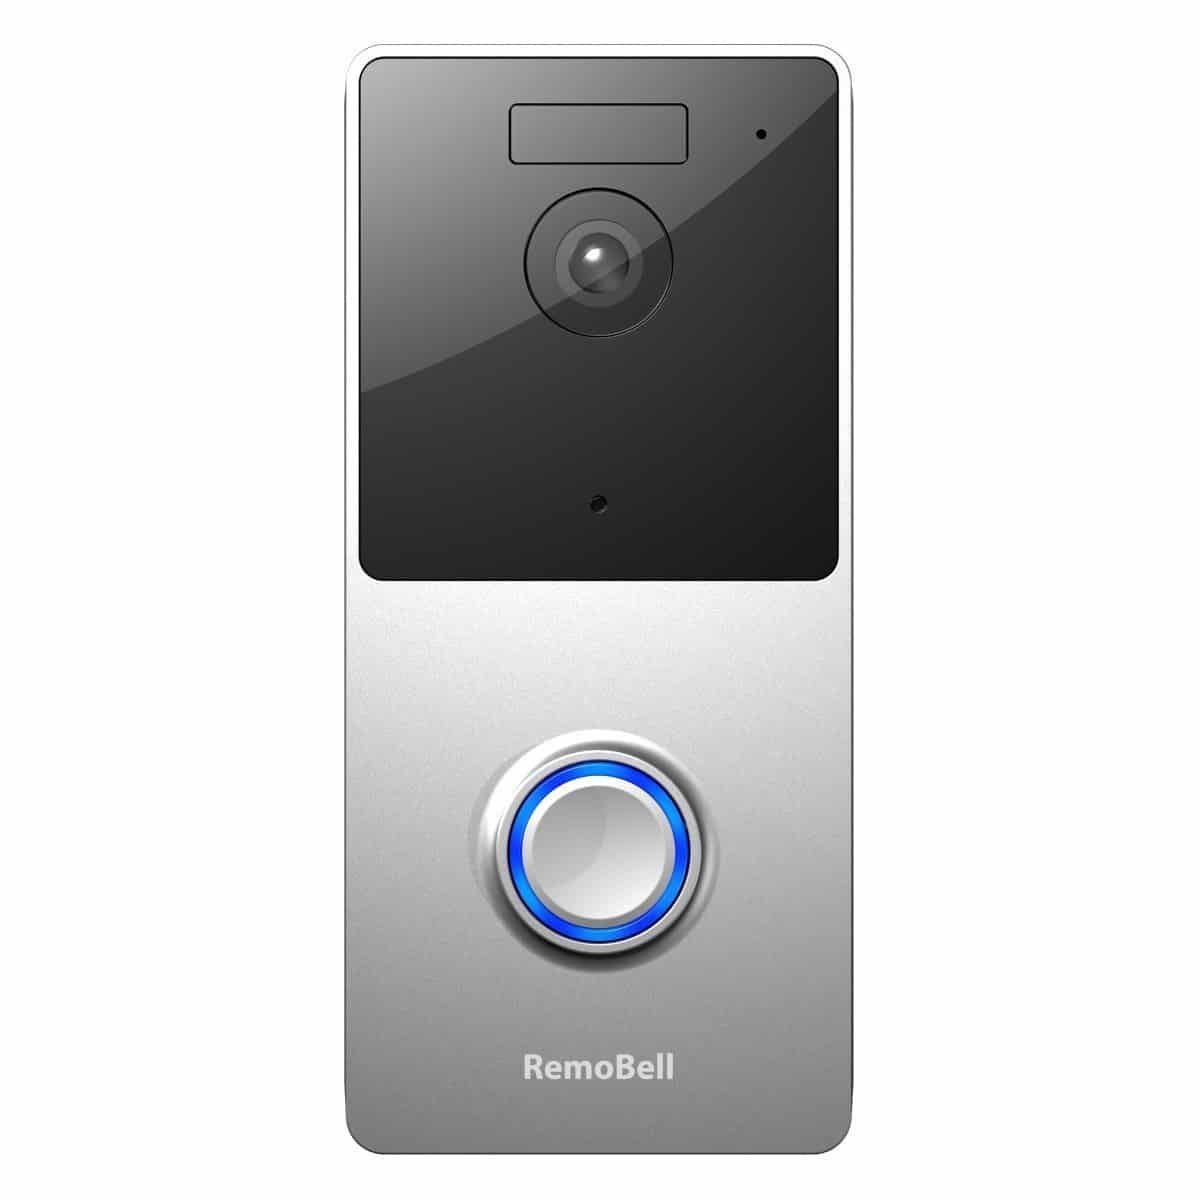 Remobell Video Doorbell - diy smart doorbell